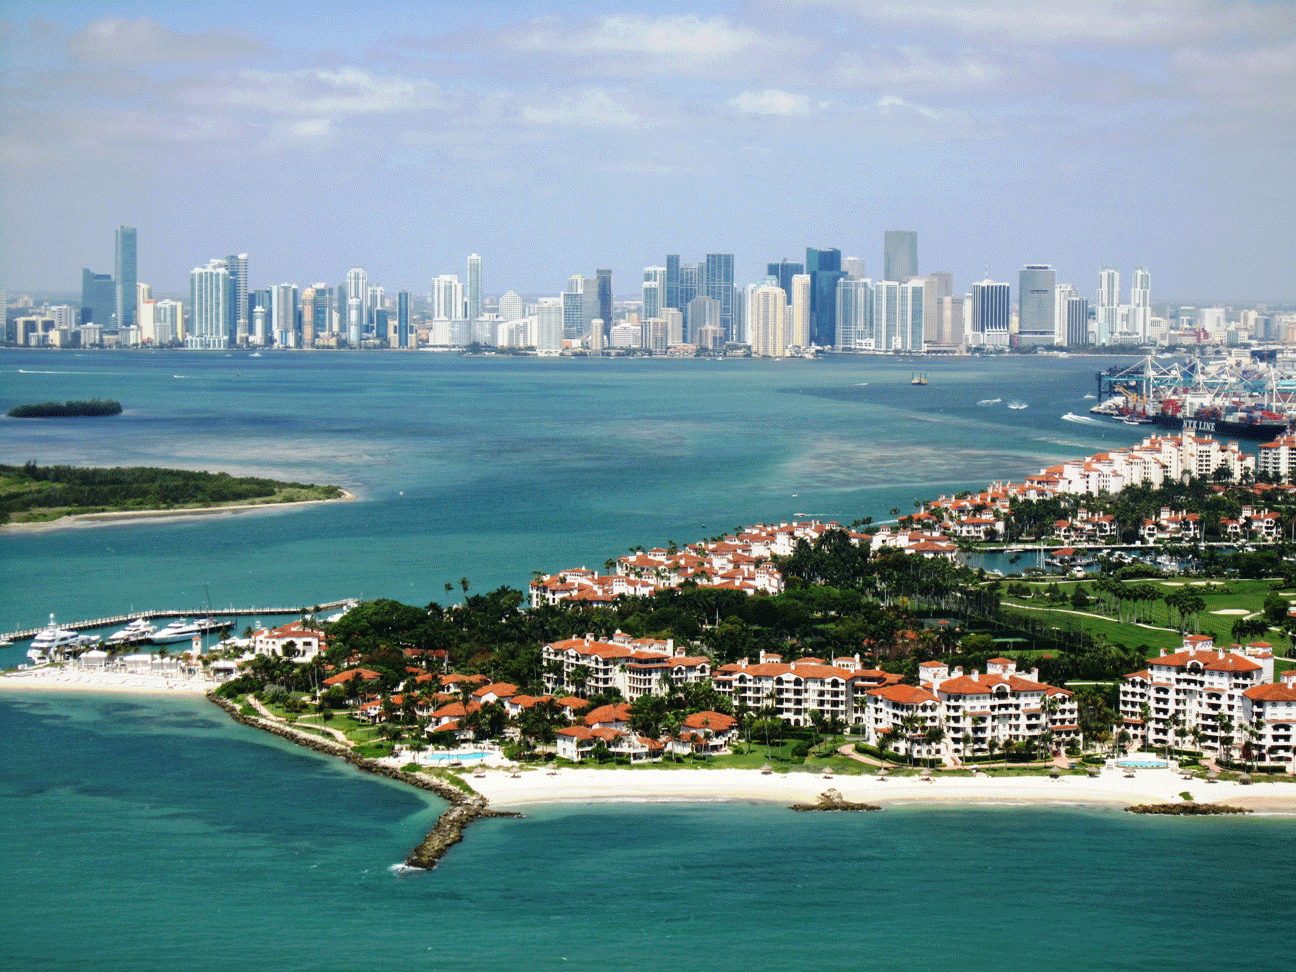 Barnes Miami; Agencia inmobiliaria de Miami; compra; Compra en Miami; rebaja; vender en Miami; alquiler; alquiler en Miami; Bienes raíces de lujo en Miami; apartamento en Miami; apartamento en miami; condominio en Miami; condominio Miami; casa en Miami; casa miami; vivir en Miami; mudarse a Miami; compra sobre plano en Miami; nuevos programas Miami; Bienes raíces en Miami; bienes raíces en Miami; mercado inmobiliario en Miami; playa de miami; Coconut Grove; ladrillo; borde de agua; el centro de Miami; aguilones de coral; Cayo Vizcaíno; Fuerte Lauderdale; madera de wynwood; bienes raíces comerciales; bienes raices comerciales en miami